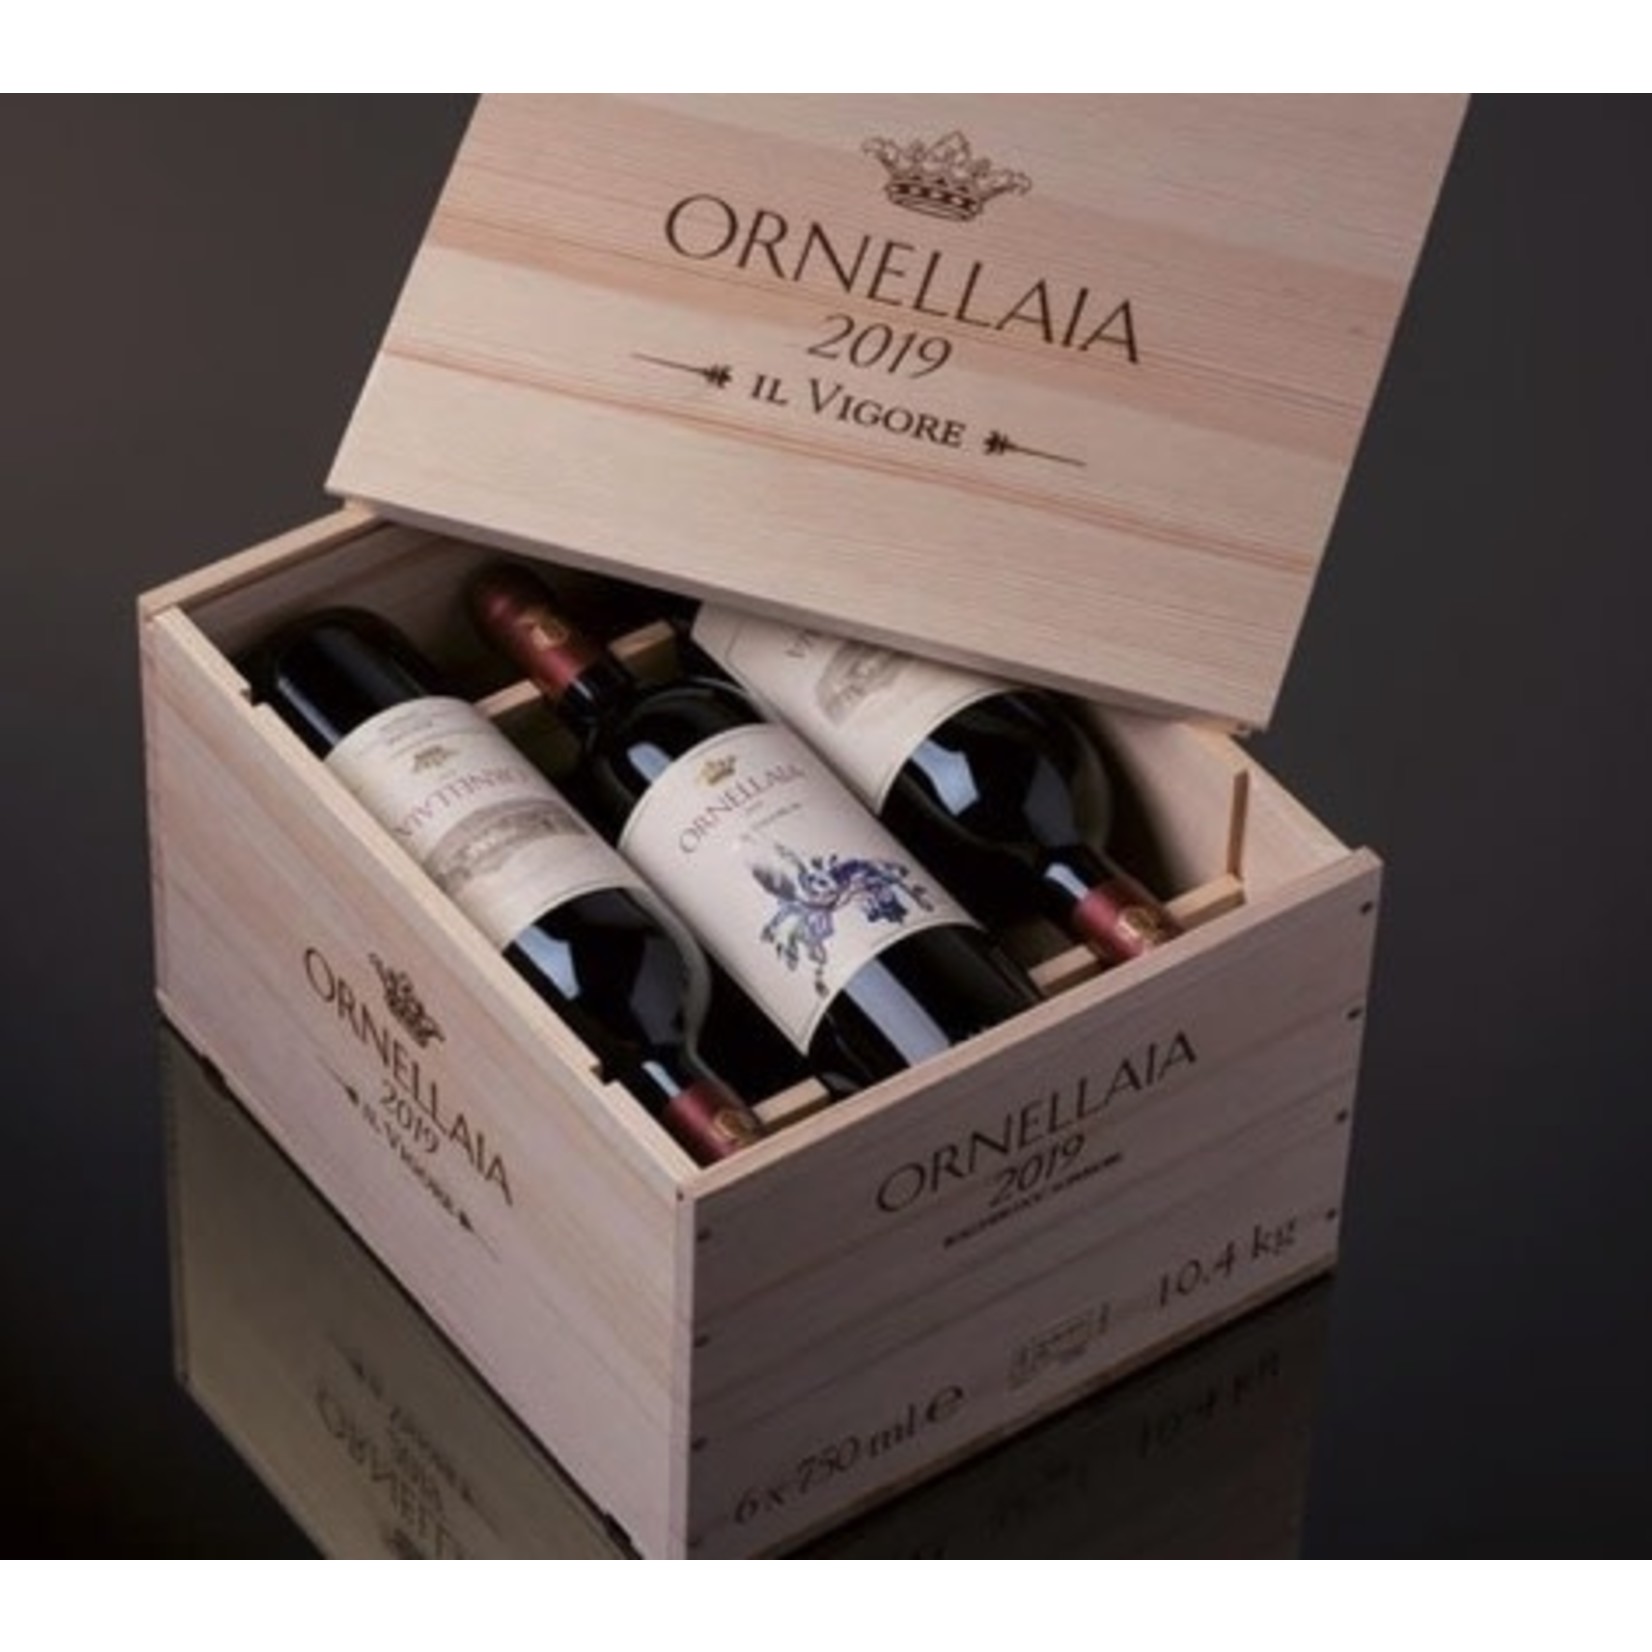 Wine Ornellaia Bolgheri Superiore 2019